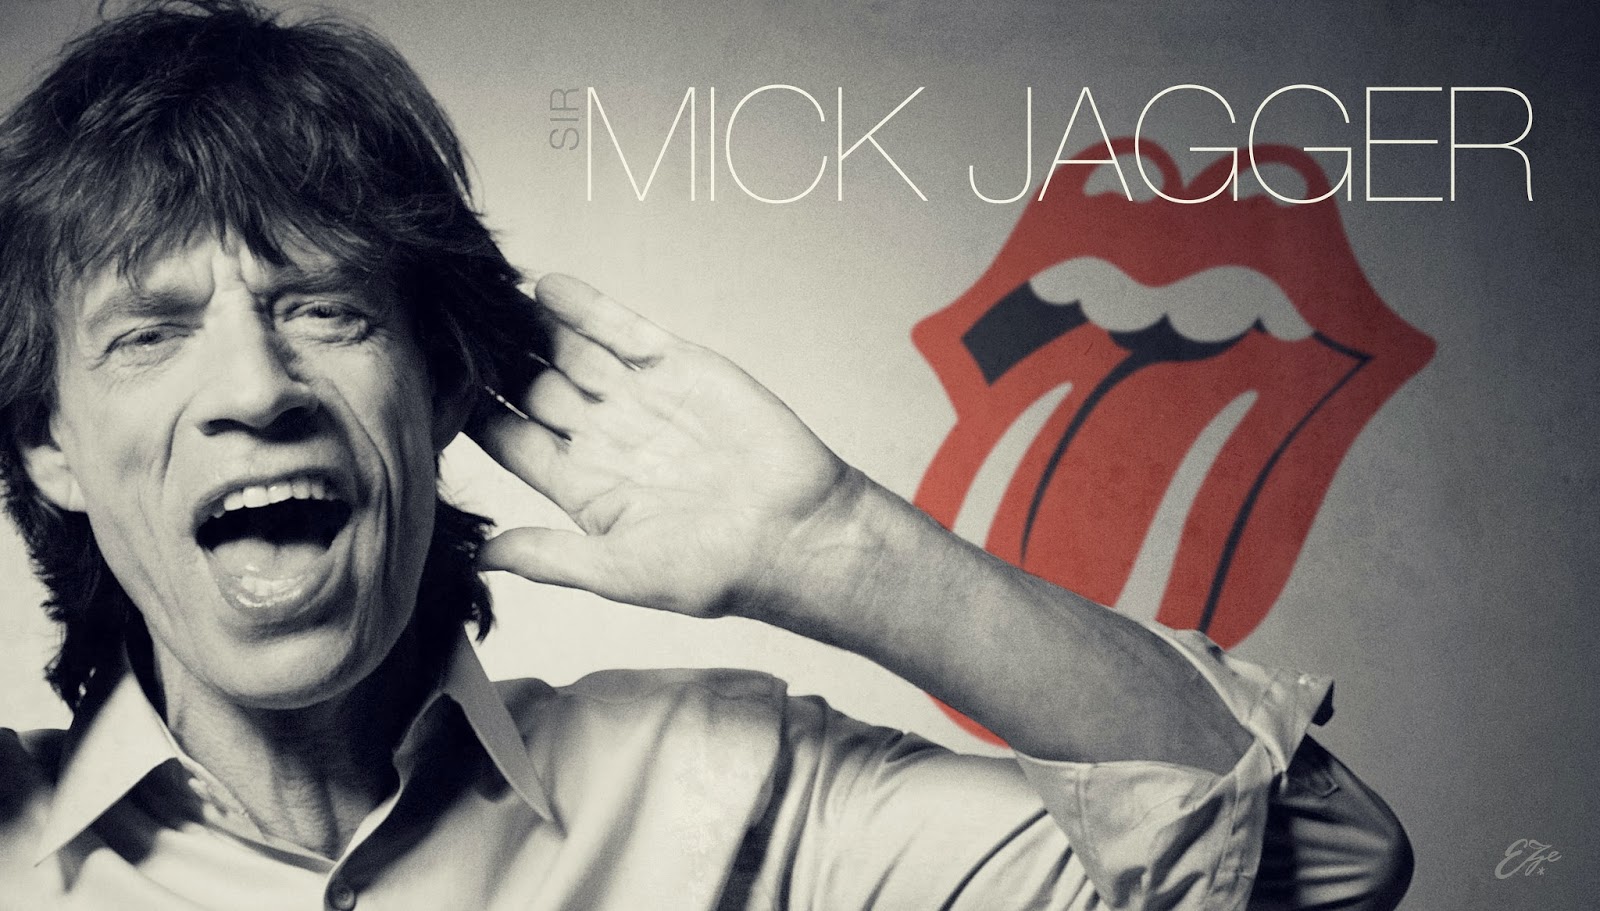 mick jagger wallpaper,facial expression,album cover,text,cool,font